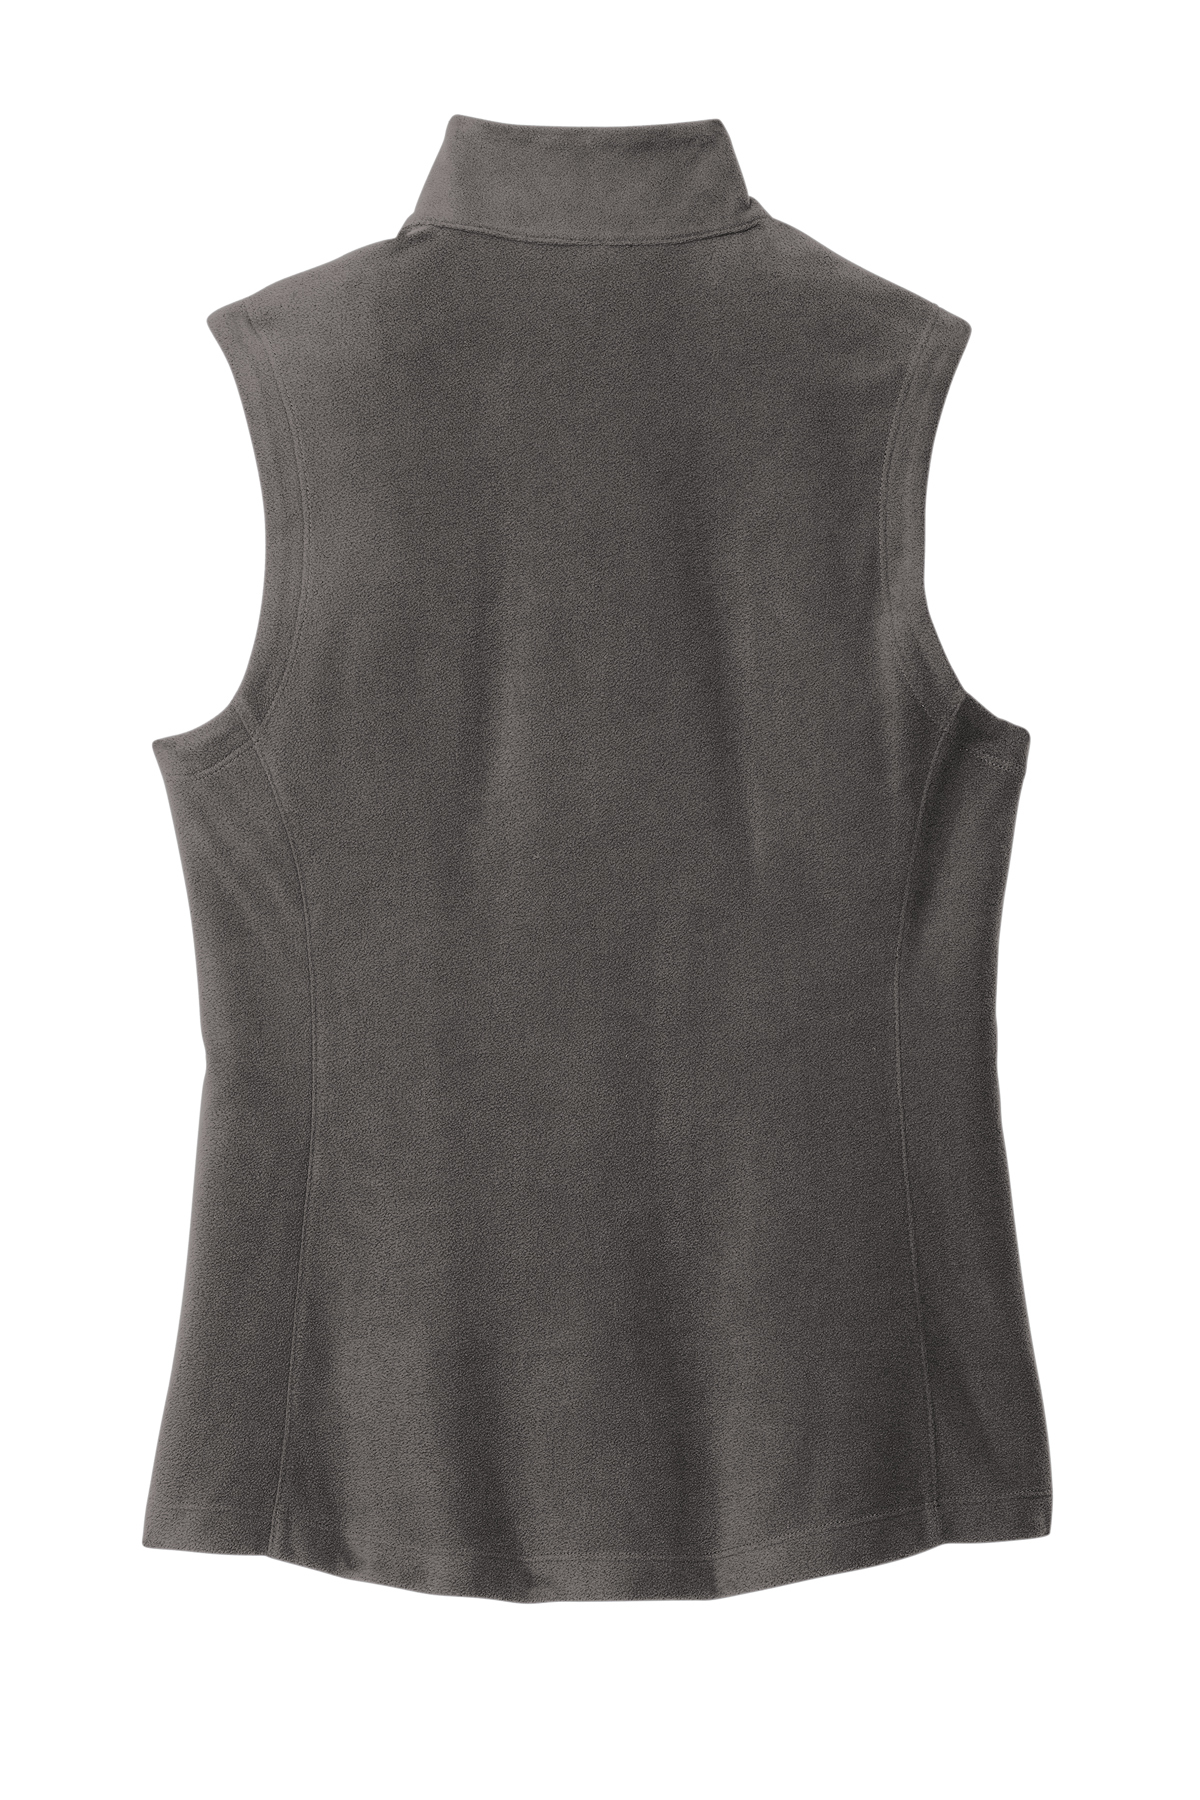 Port Authority Ladies Accord Microfleece Vest | Product | SanMar